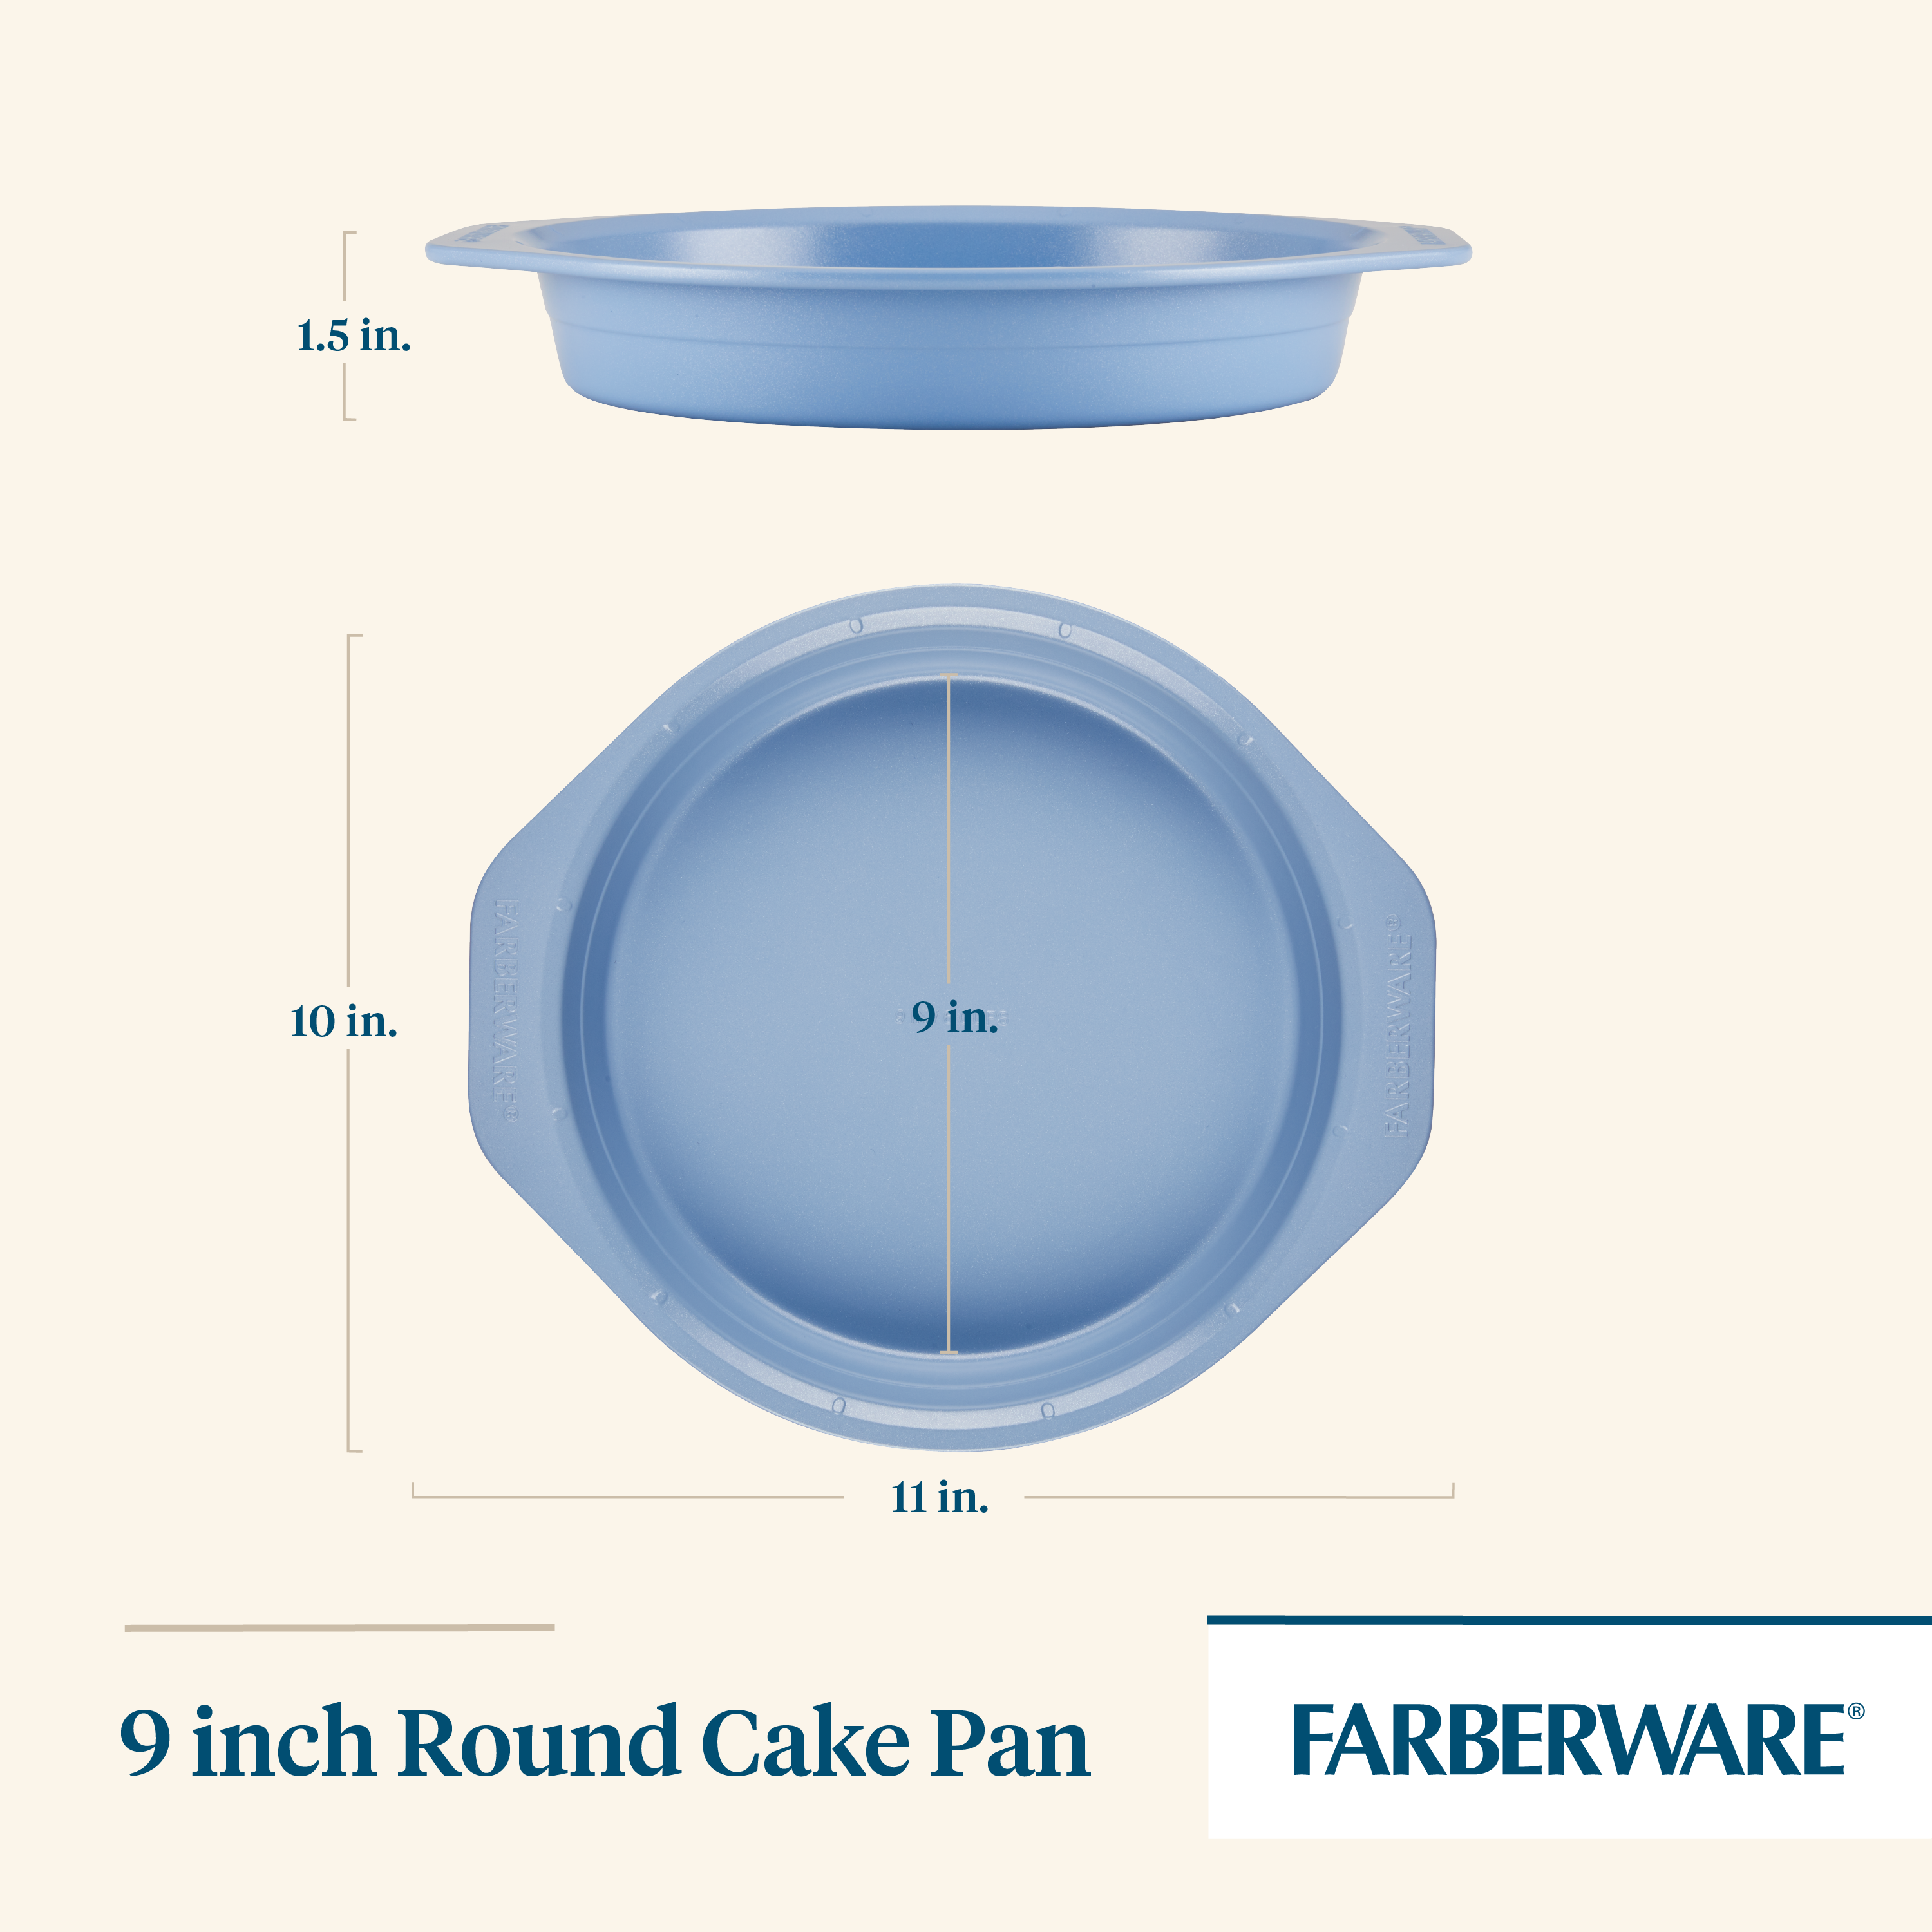 https://farberwarecookware.com/cdn/shop/files/48794_FBW_FEG_9in-Round-Cake-Pan_Dimensions.png?v=1690497044